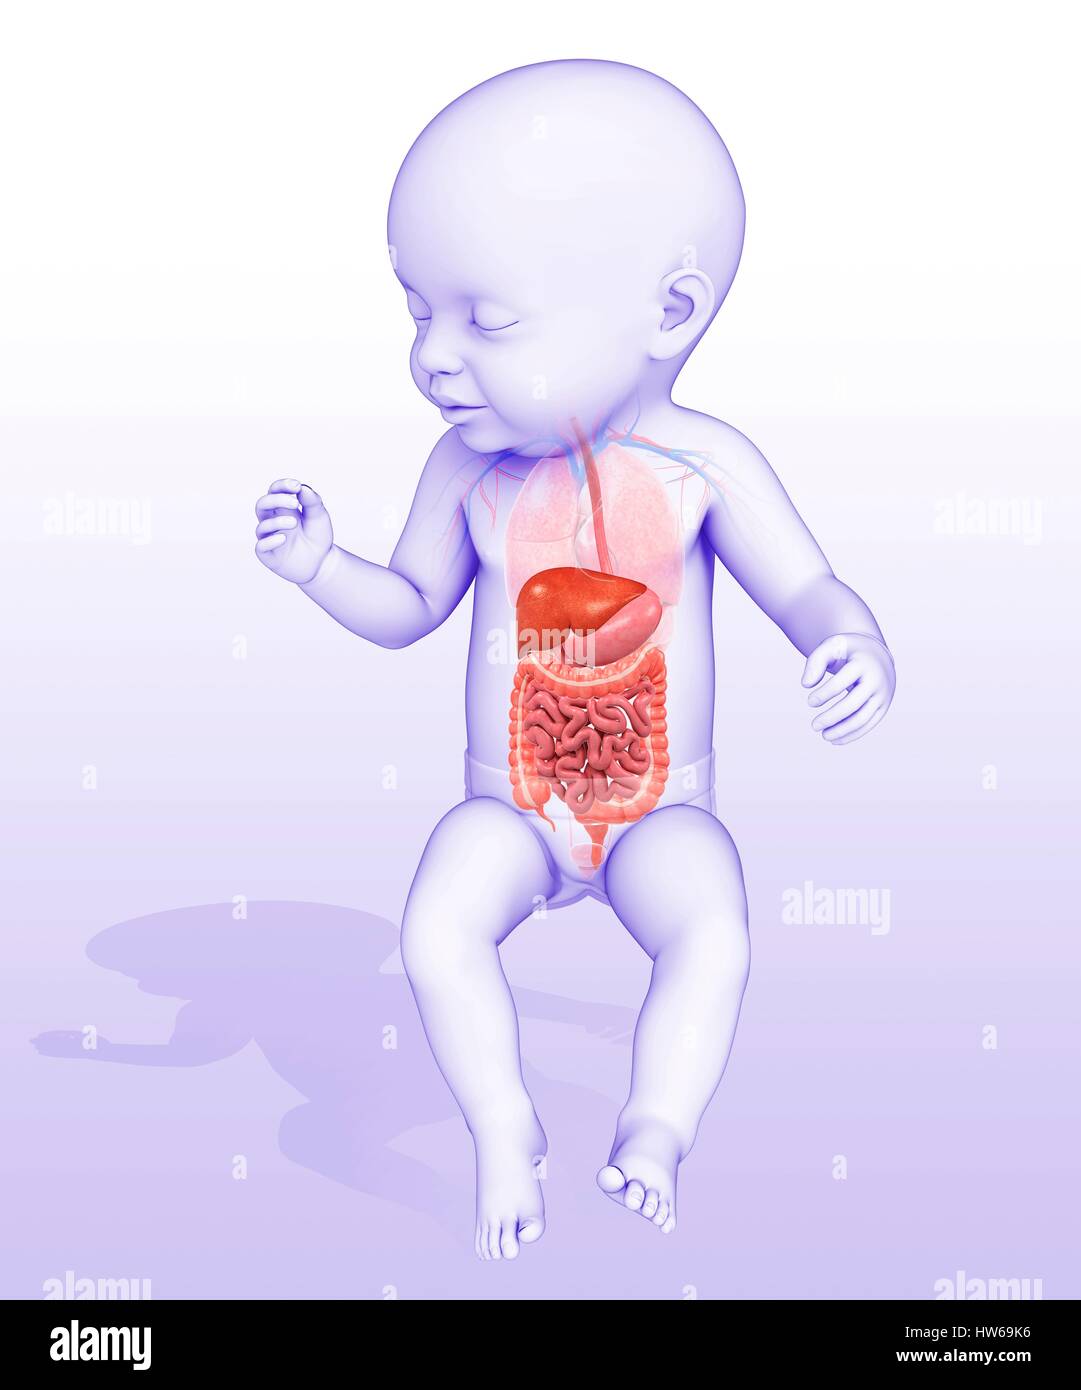 Пищевод у новорожденного. Пищеварительная система для детей. Пищеварительная система у новорожденных. Анатомия для детей пищеварительная система. Для пищеварения новорожденному.